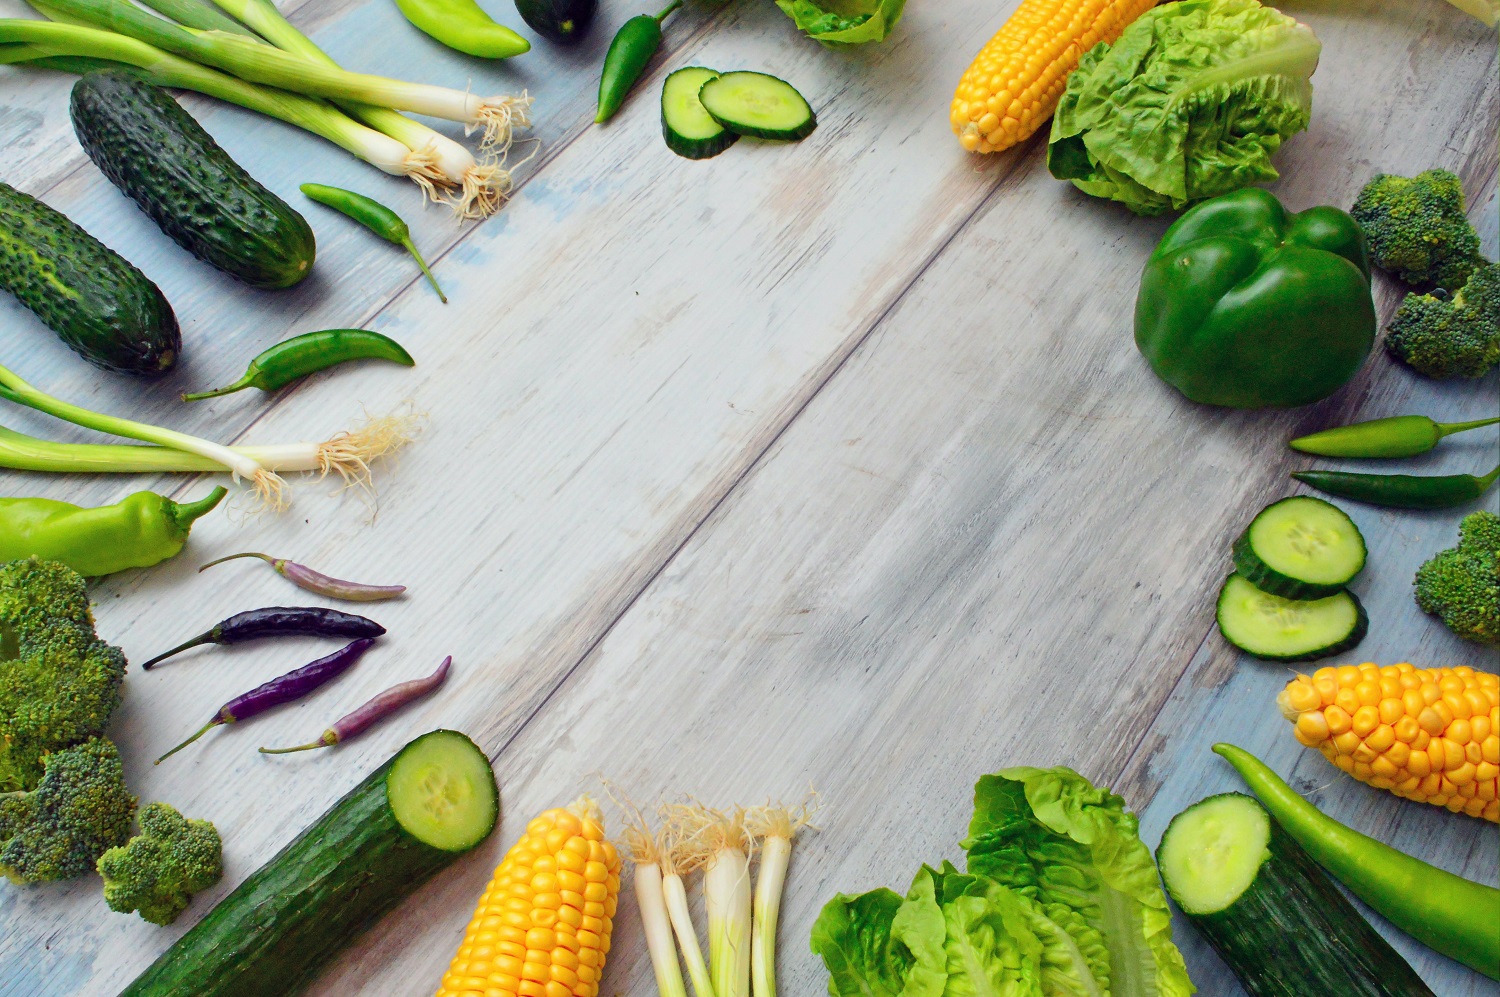 Daržoves, žoleles ir vaisius namuose galima užsiauginti pakartotinai: nuo salotų iki ananasų